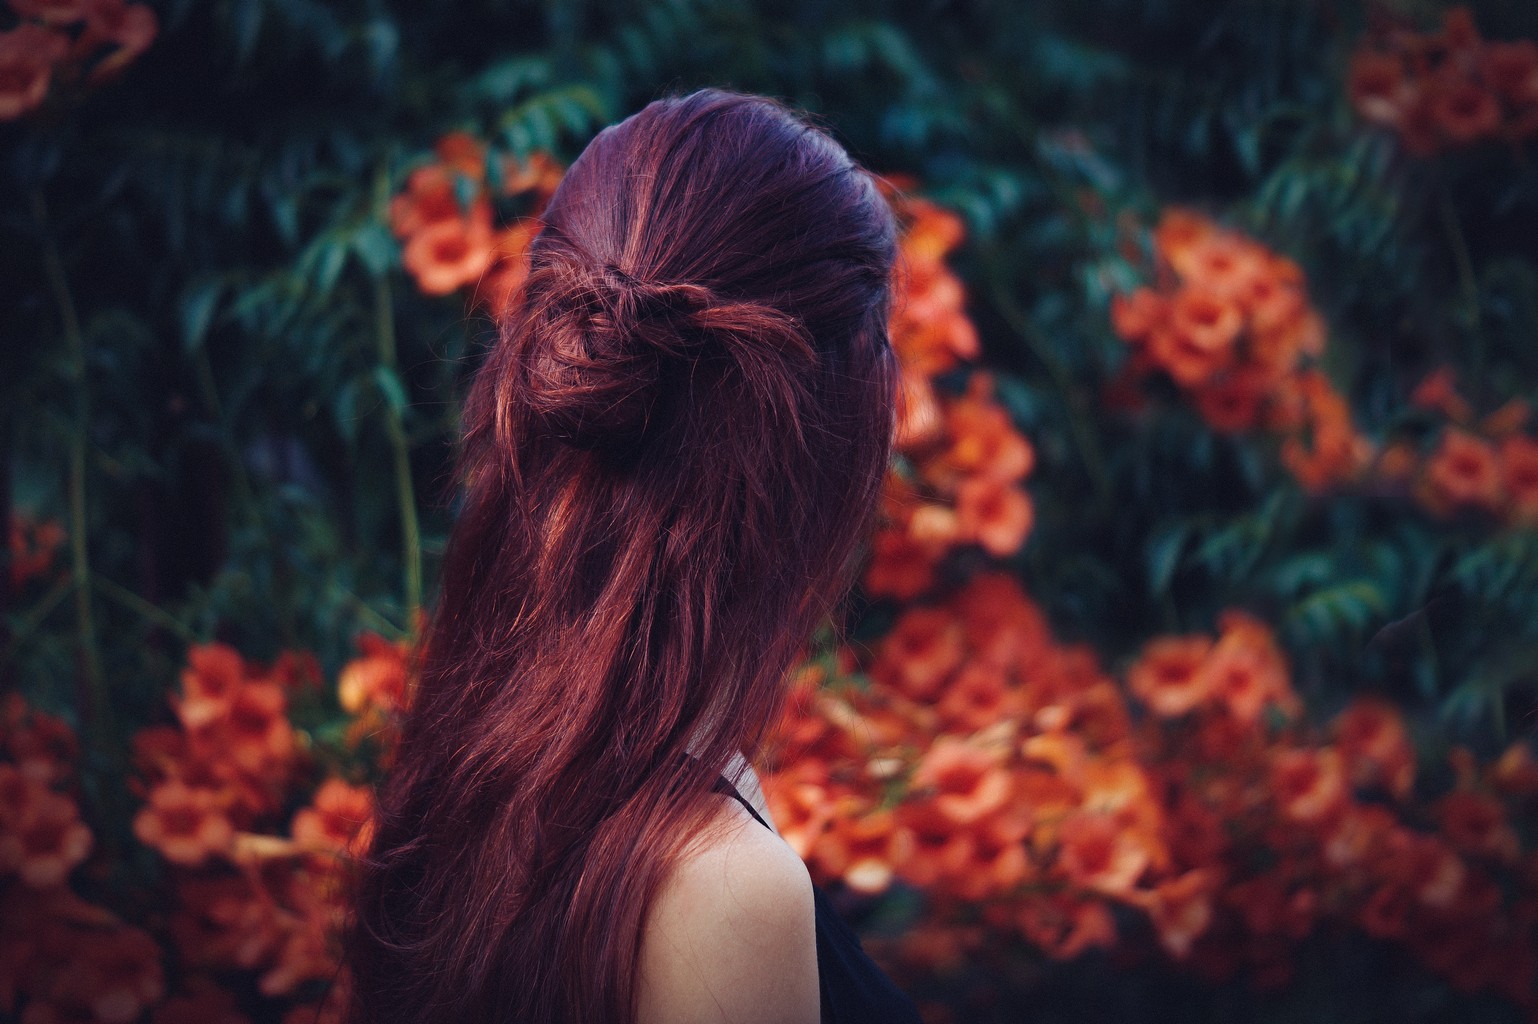  Mulher de costas, cabelo vermelho, com flores ao fundo na cor laranja, na floresta